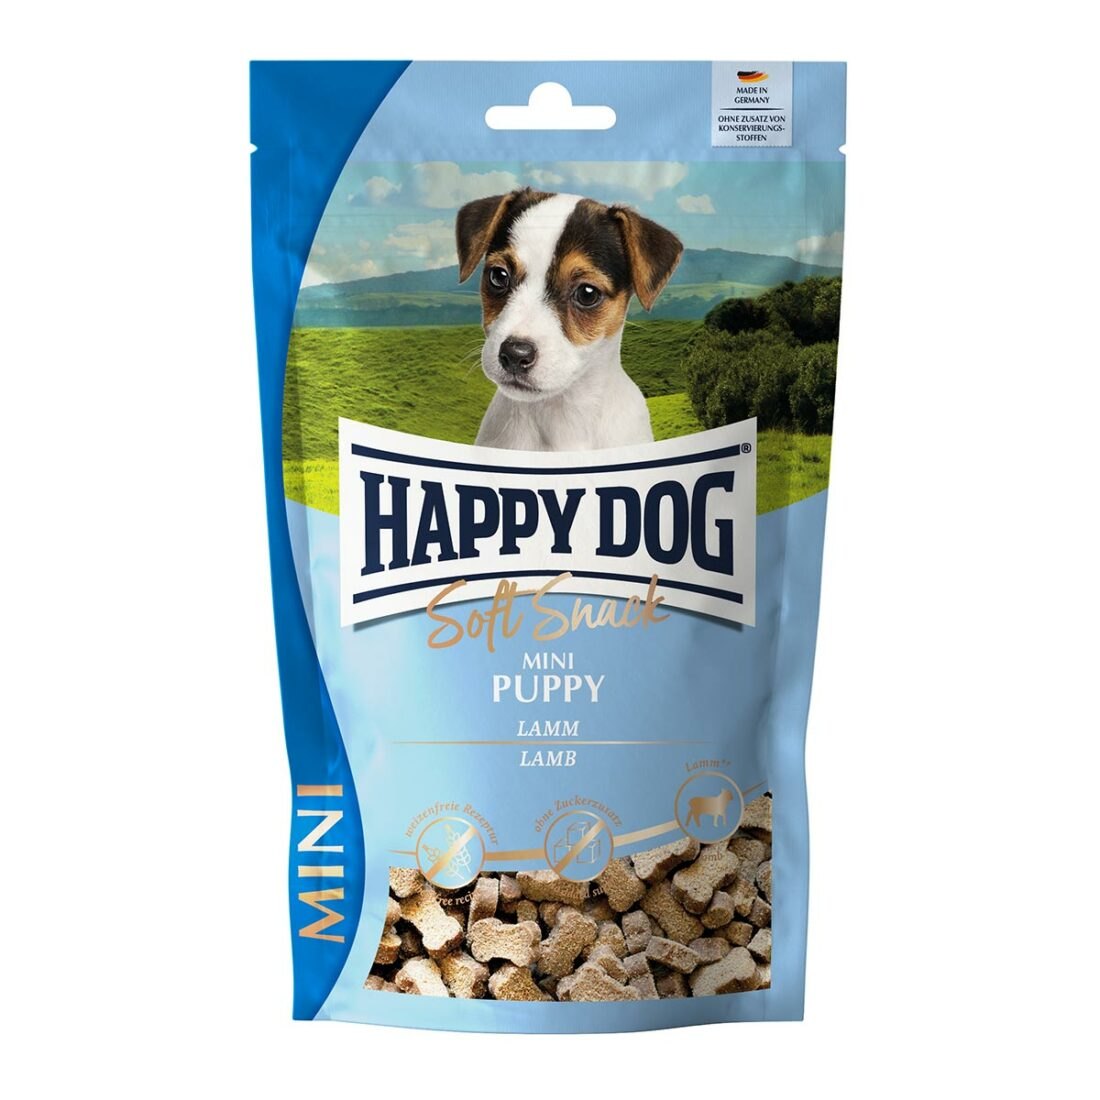 Happy Dog SoftSnack Mini Puppy 5